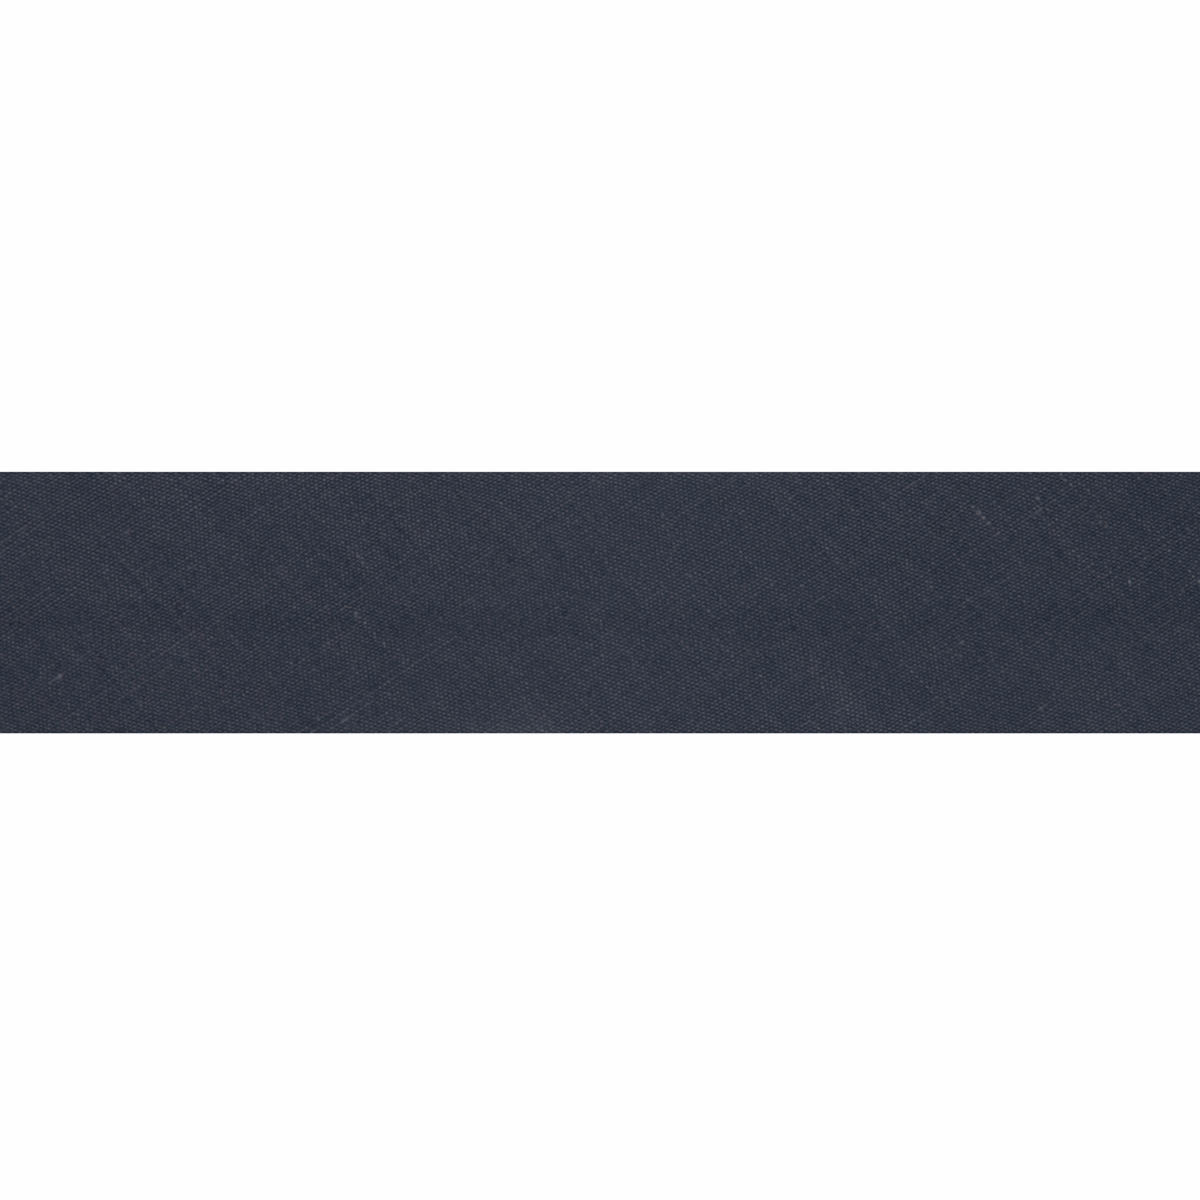 Polycotton Bias Binding 2.5m x 12mm - Slate Grey